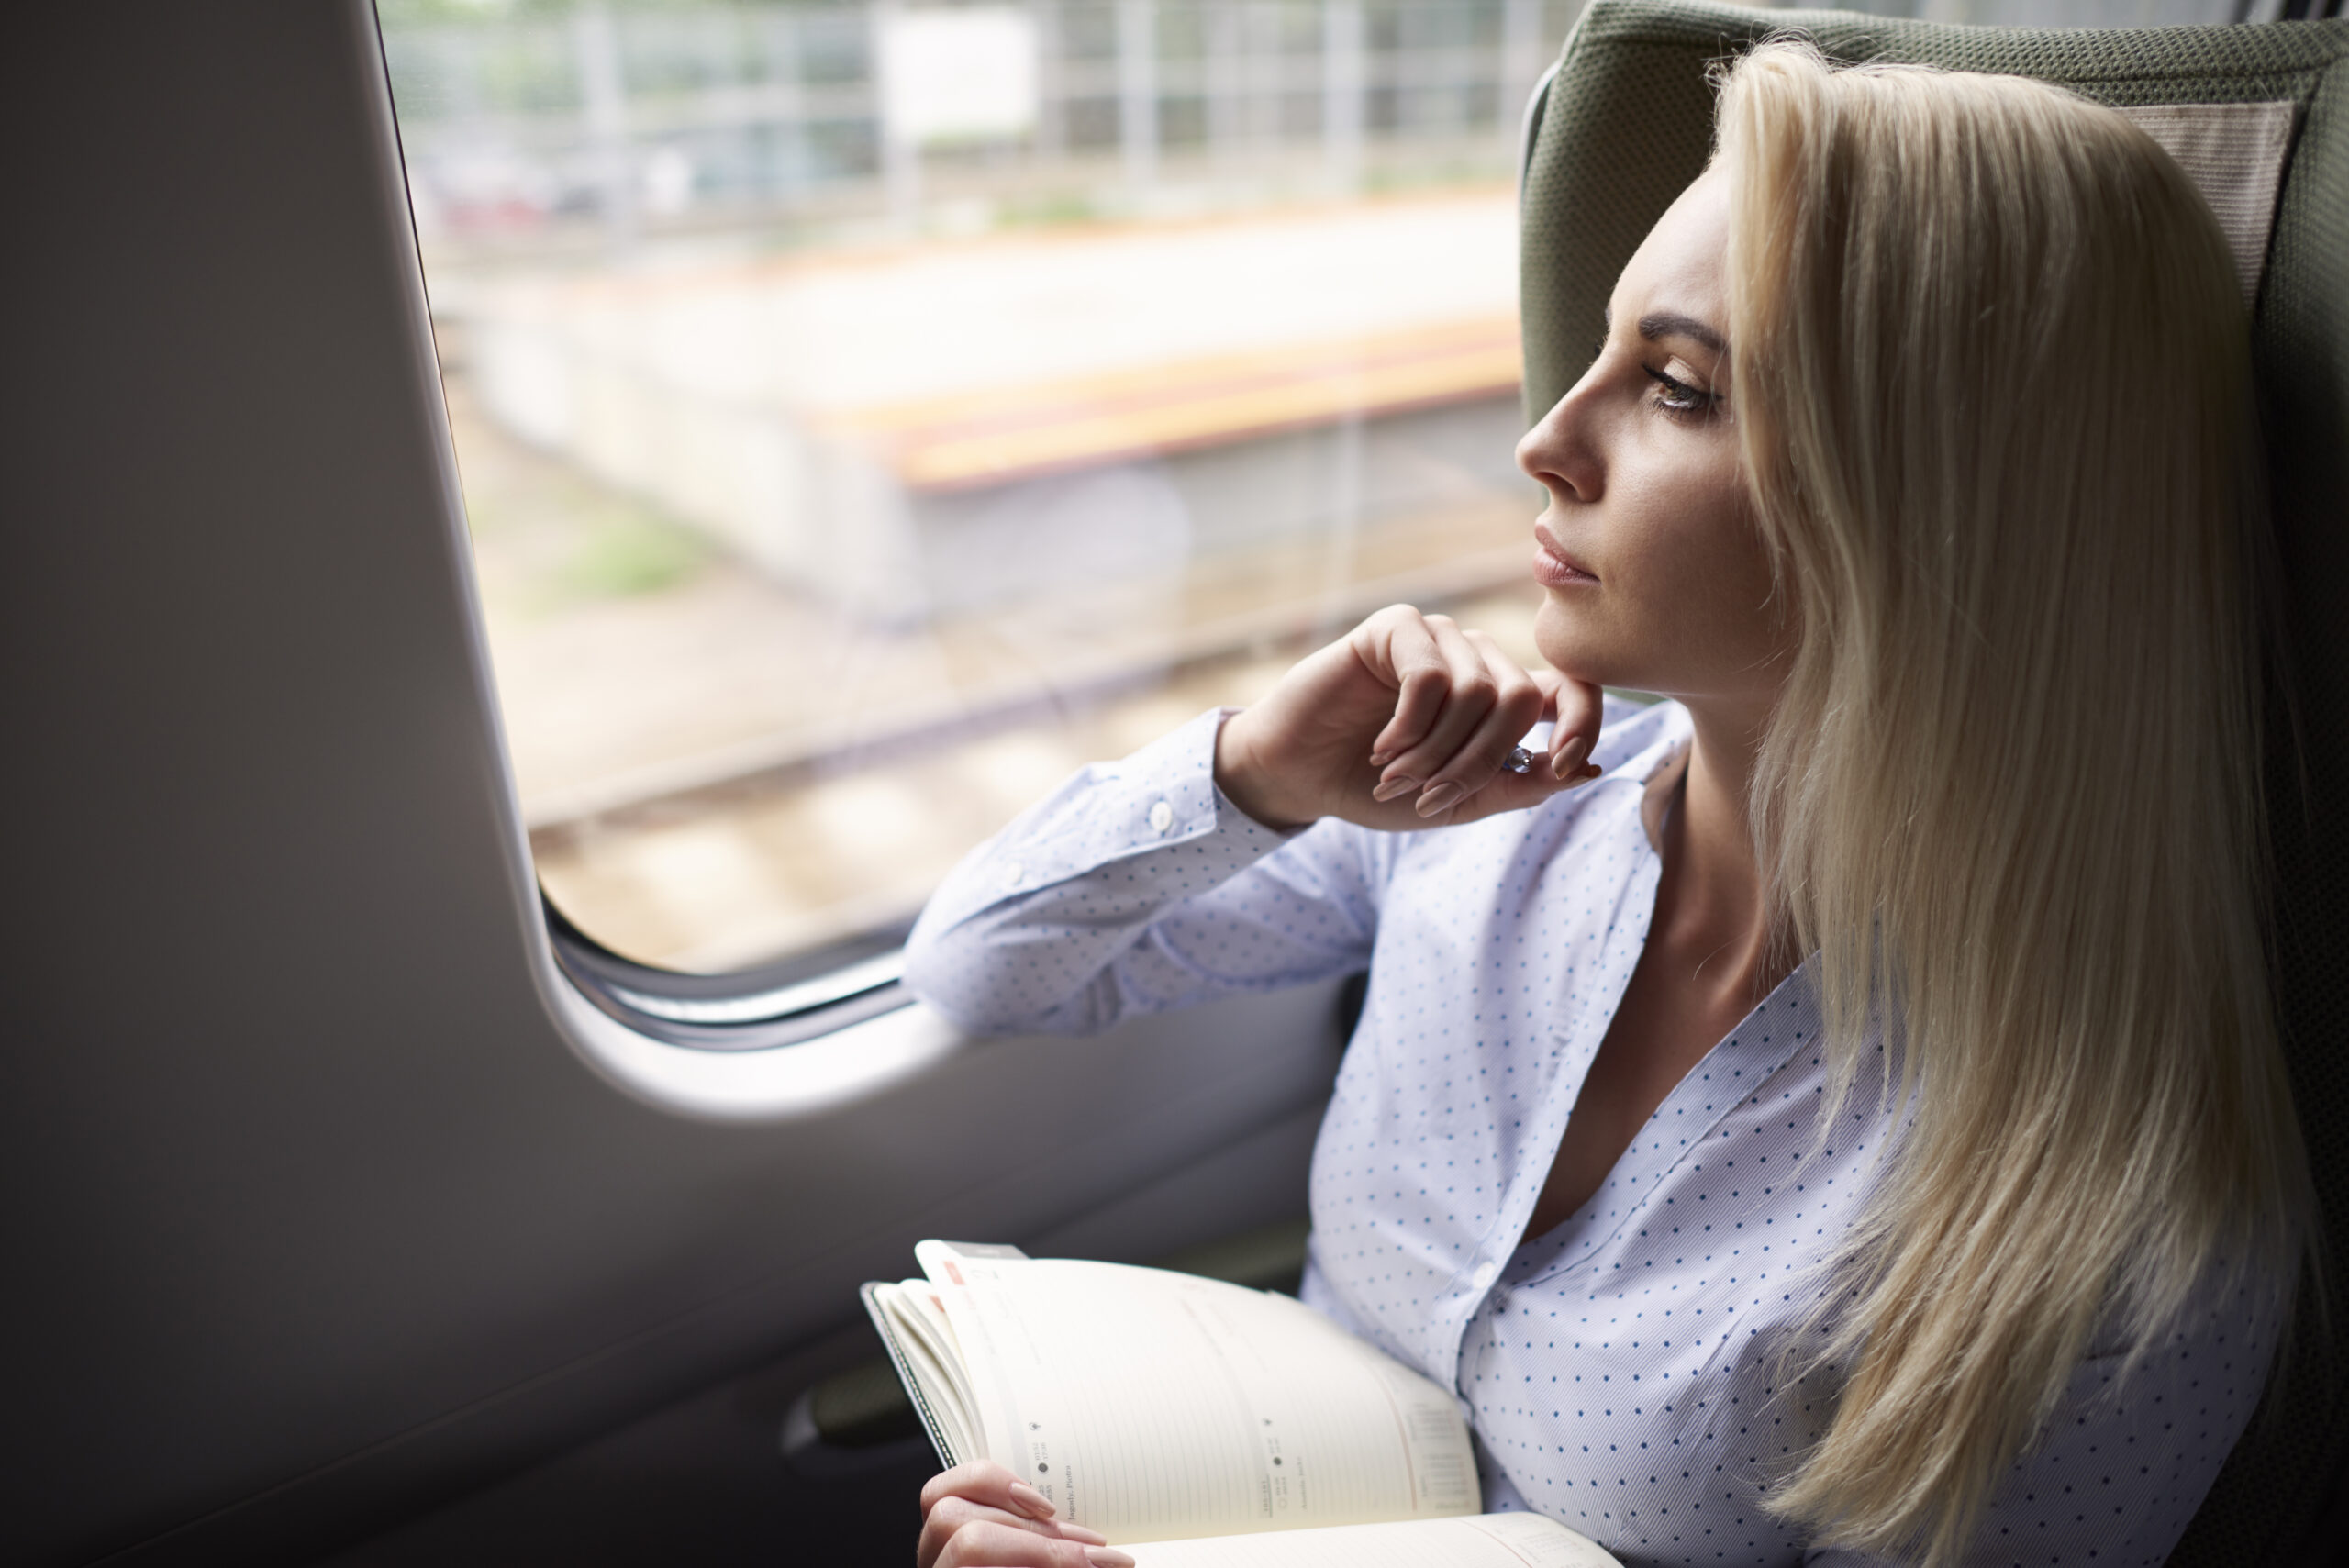 Viaggiare in Treno, alcuni consigli utili per un viaggio comodo e rilassante